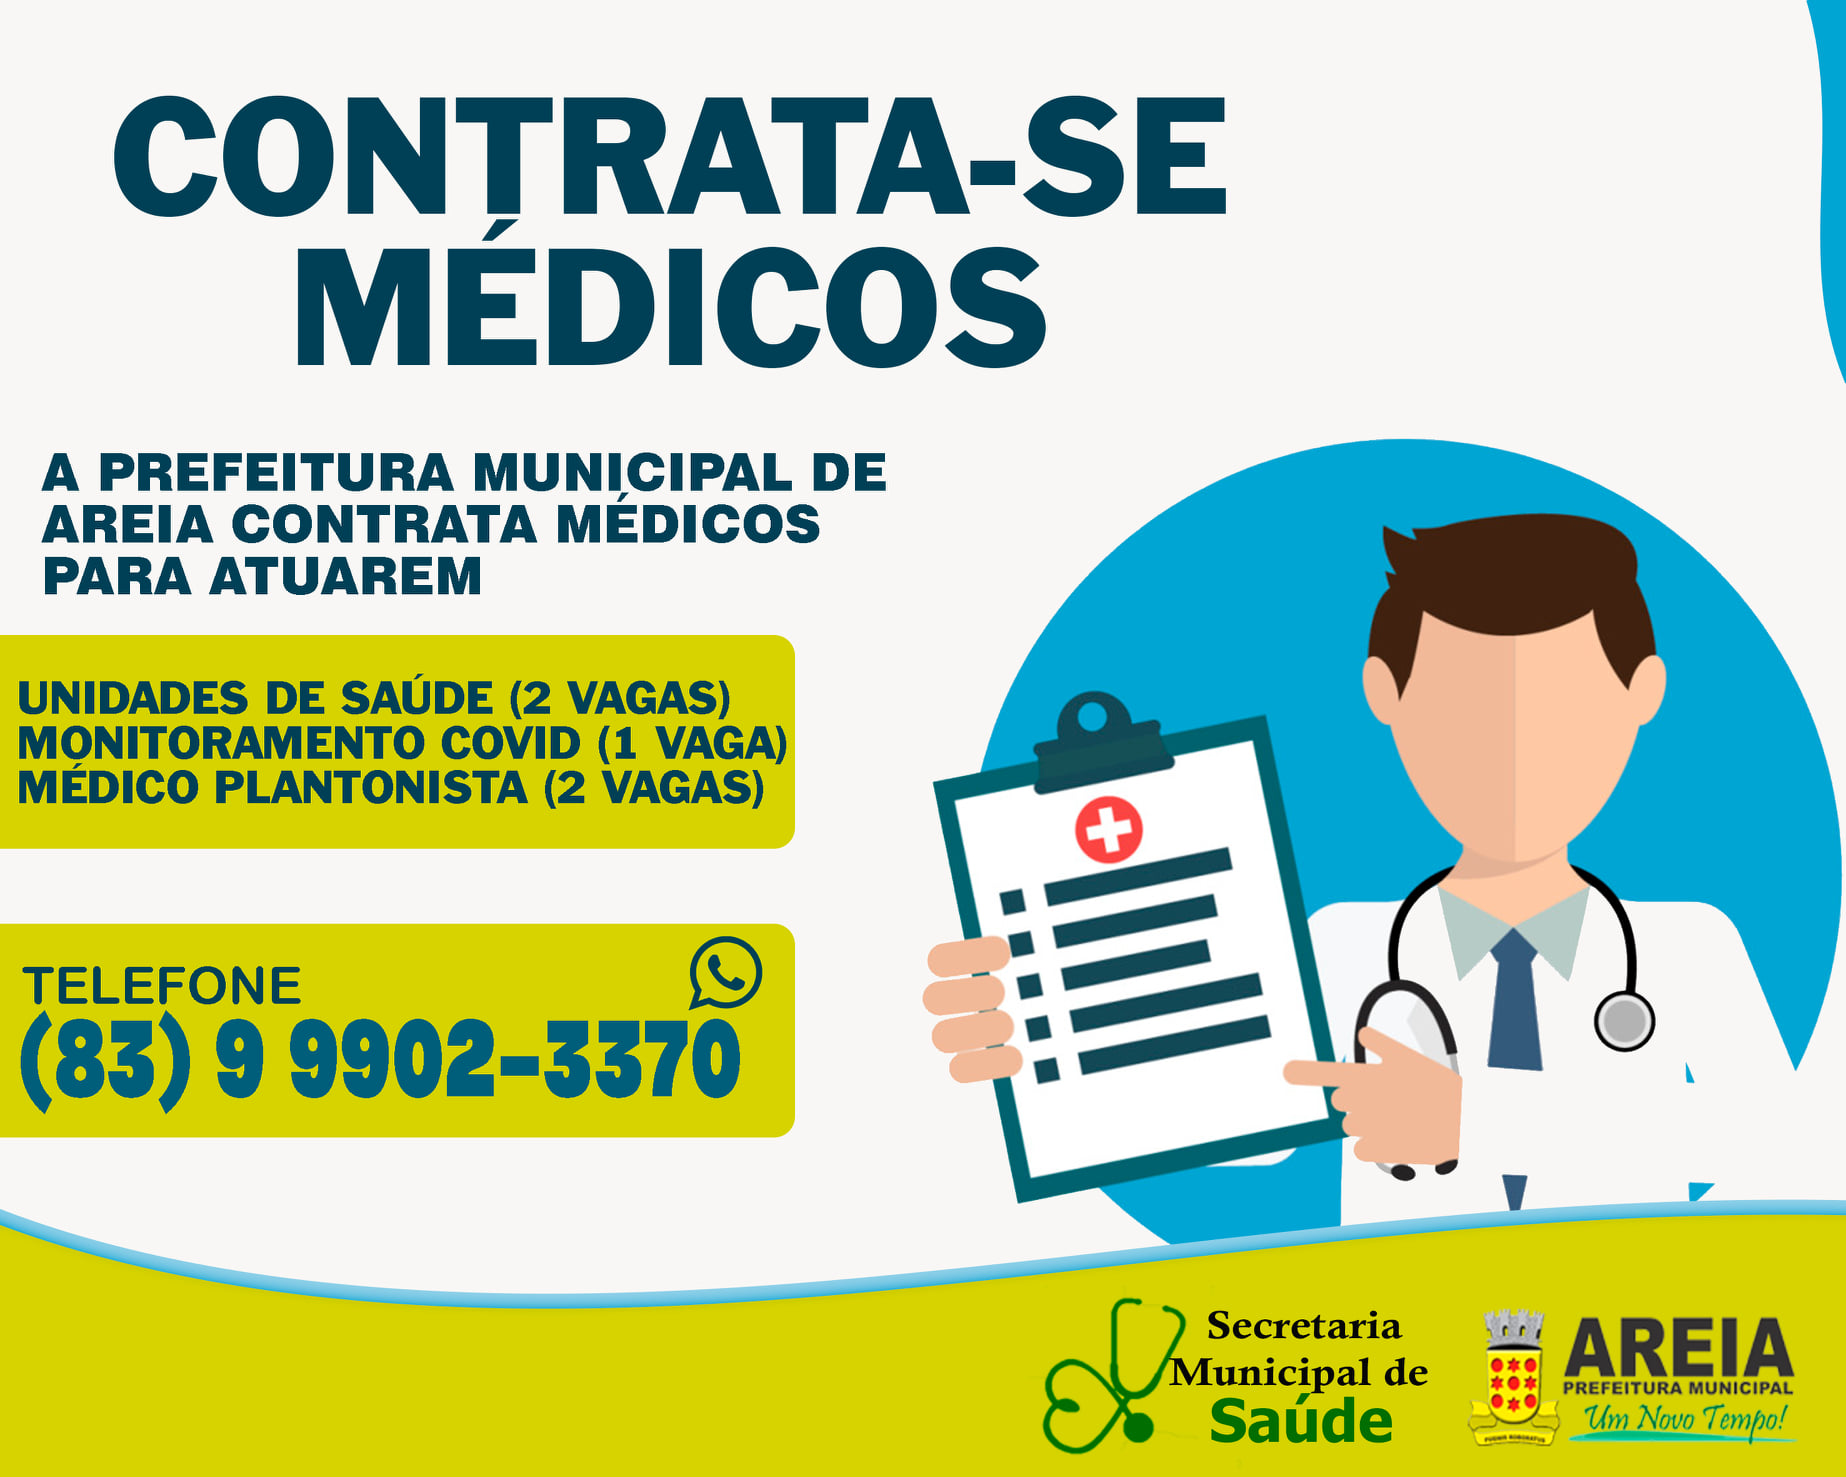 A Prefeitura de Areia esta a procura de médicos para atuar nas unidades de saúde do município